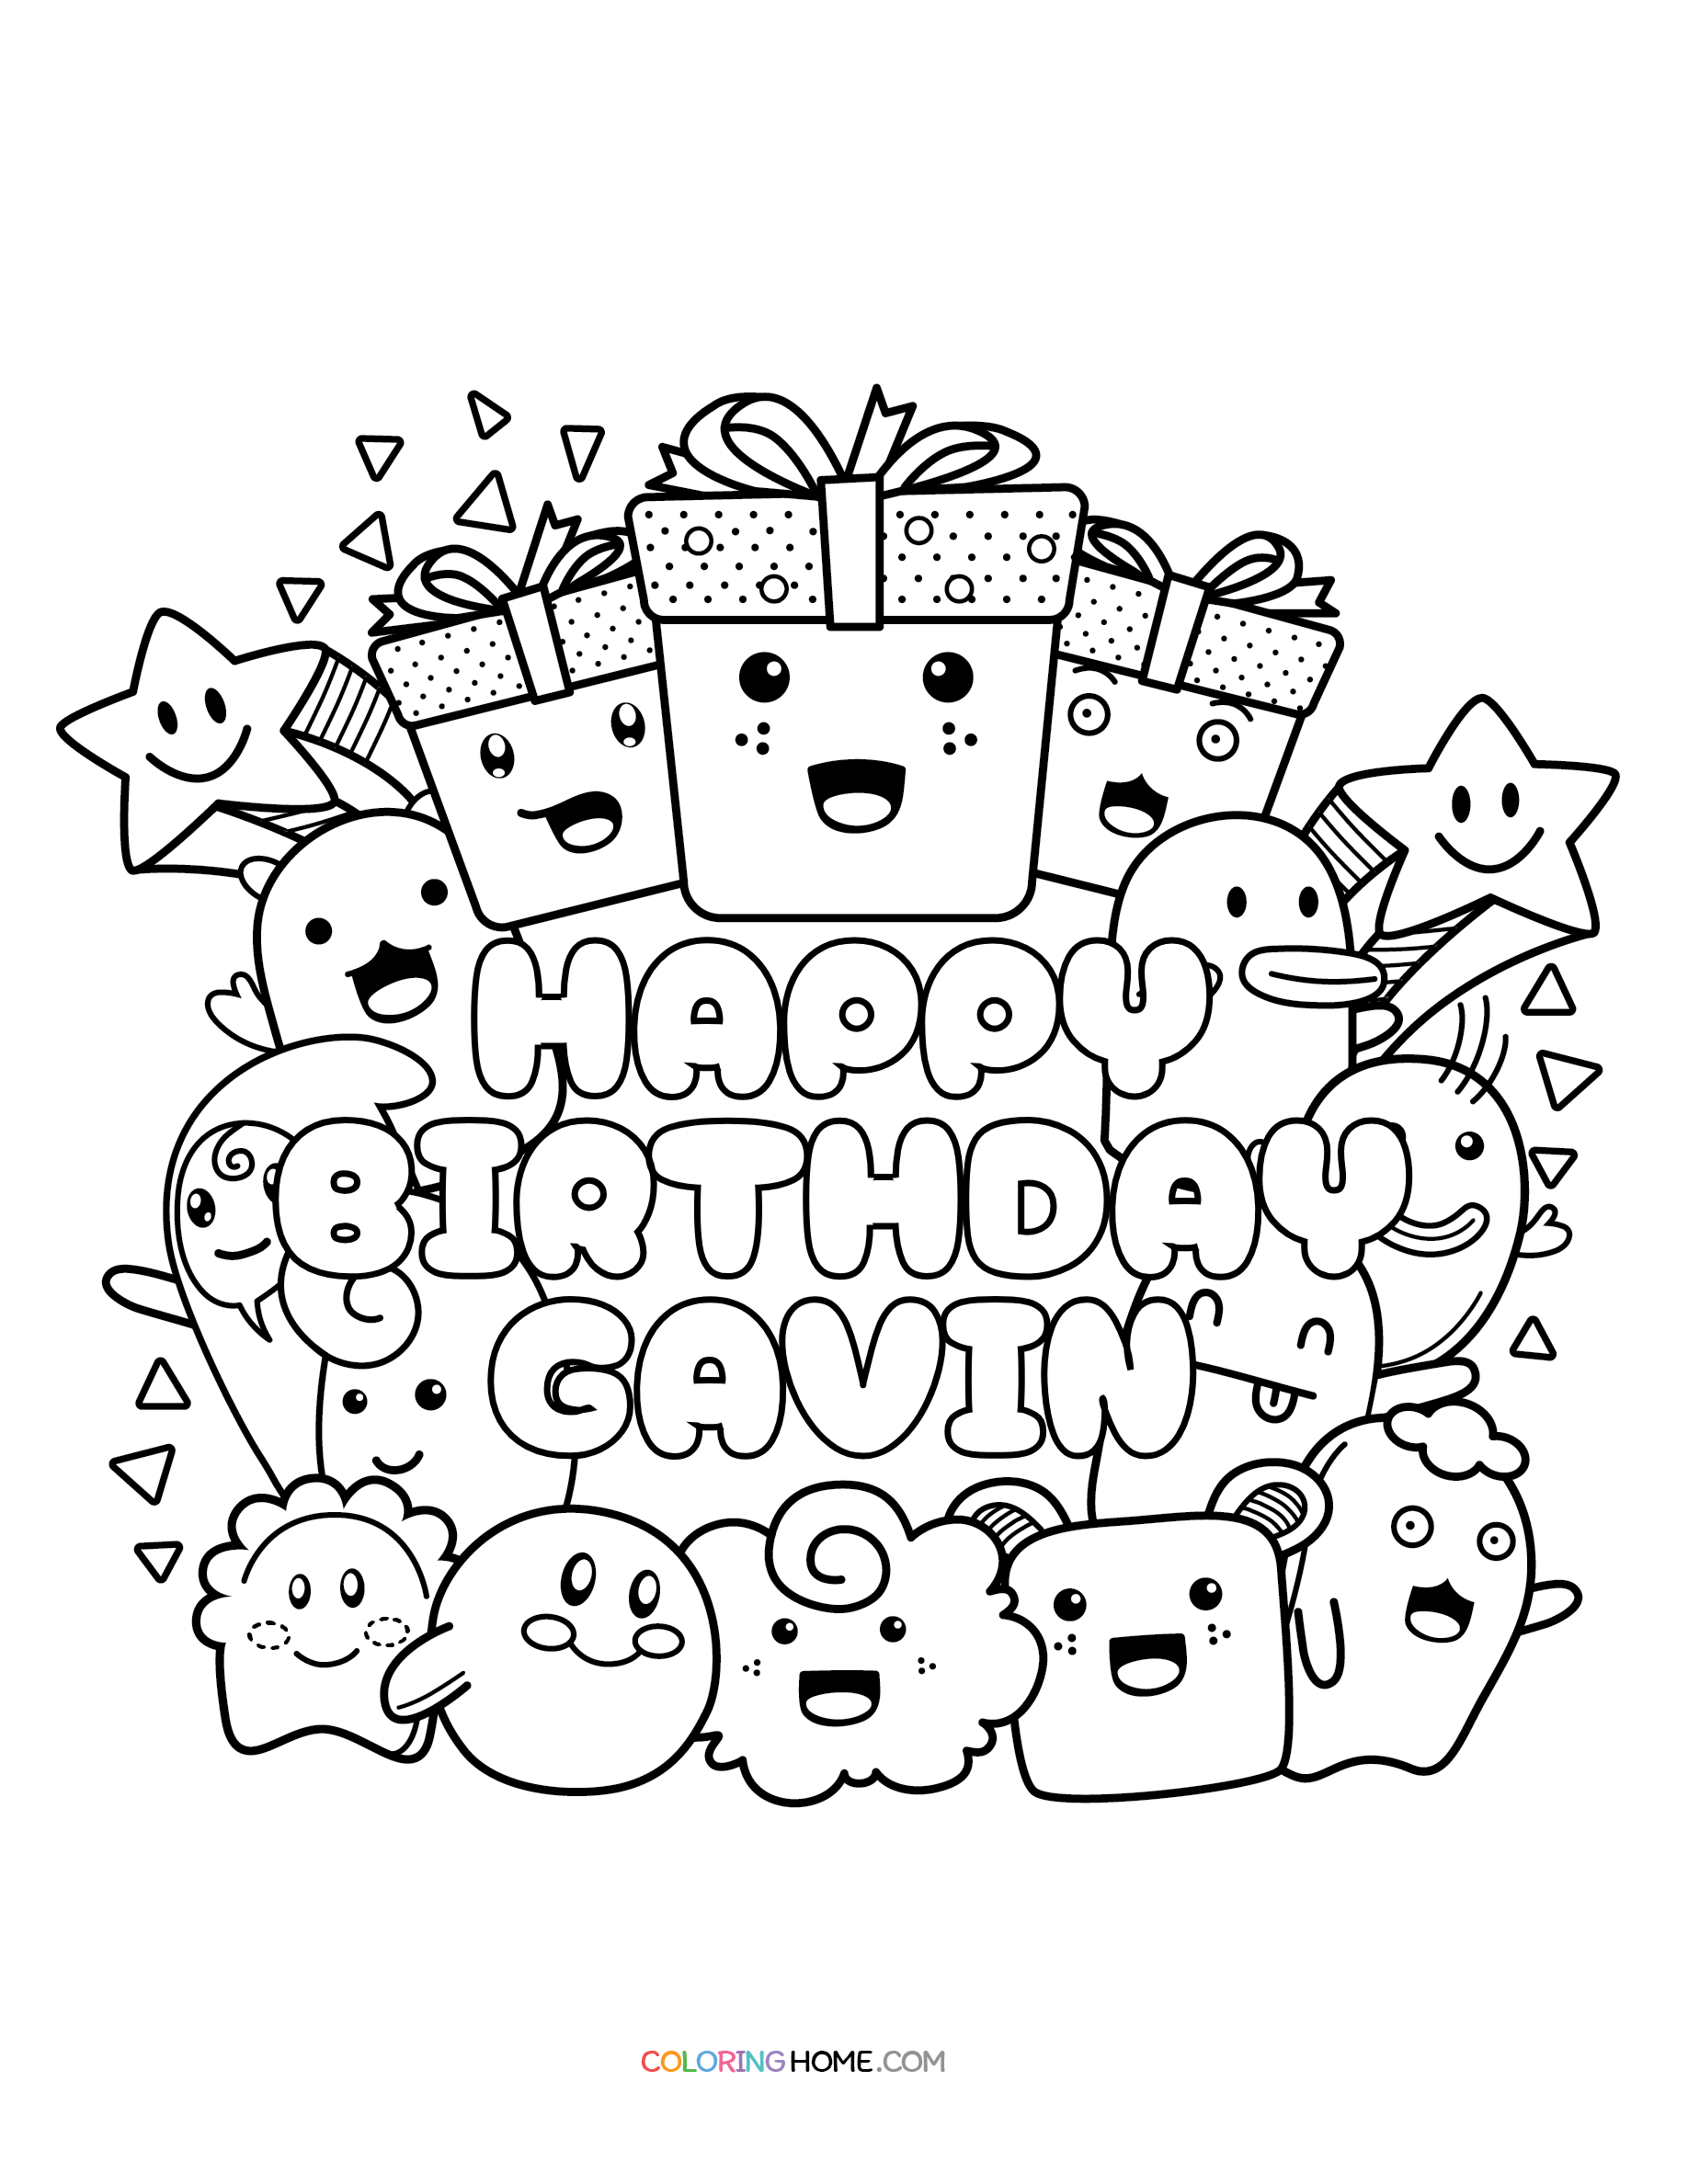 Happy Birthday Gavin coloring page